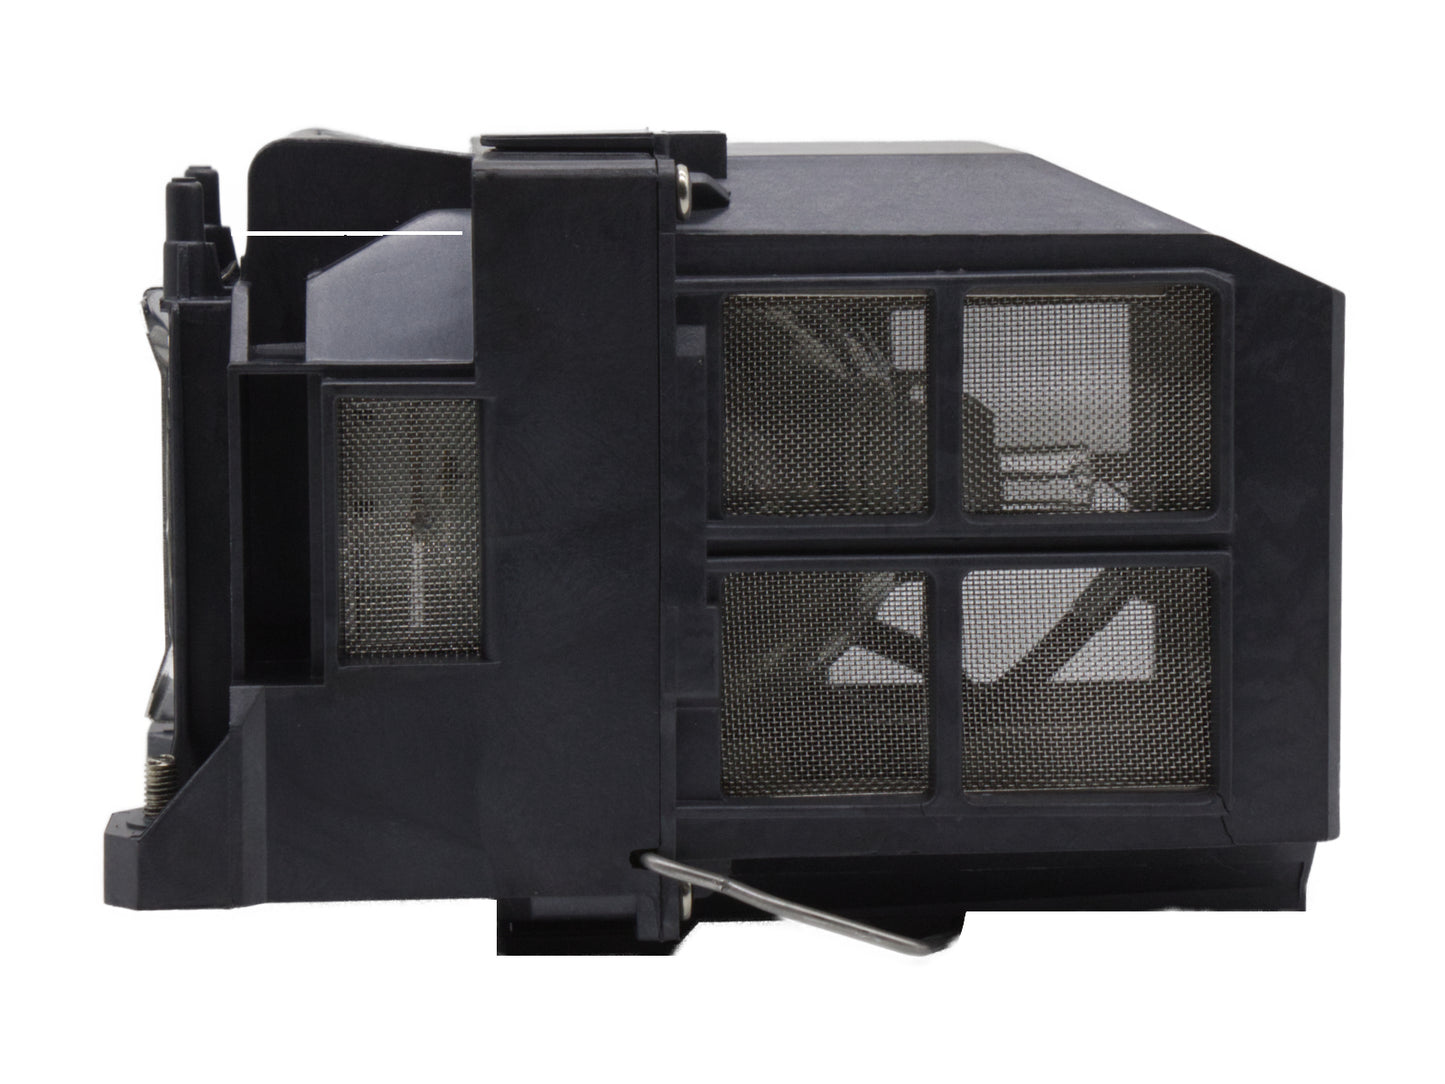 azurano Beamerlampe für EPSON ELPLP77, V13H010L77 für diverse Epson Projektoren der EB-Serie und PowerLite-Serie, Ersatzlampe mit Gehäuse, 280W - Bild 6